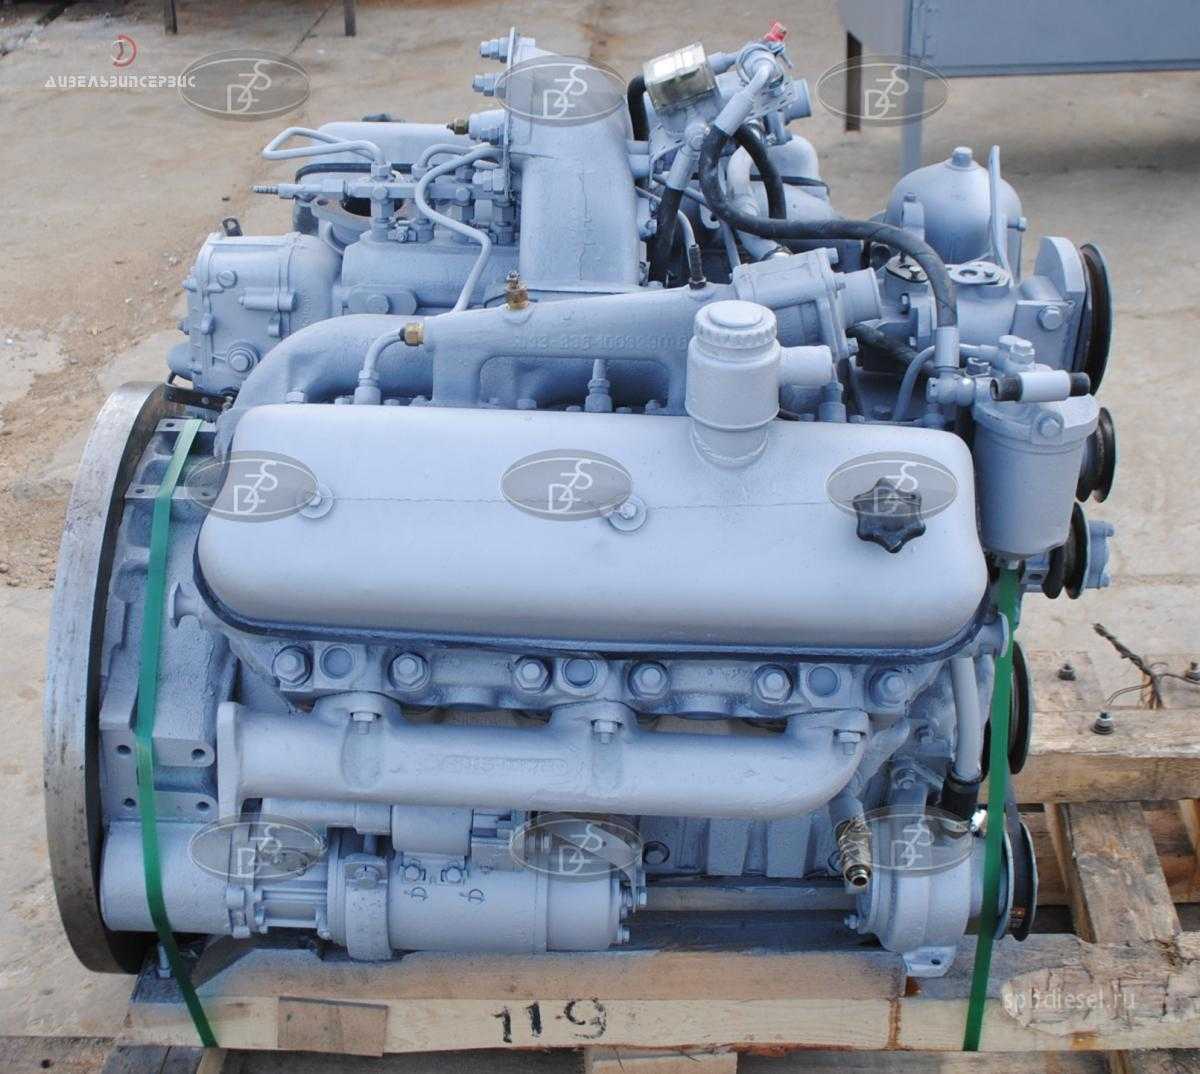 Сколько лошадиных сил в двигателе ямз 236: двигатели ямз-236 (ярославский моторный завод) технические характеристики и устройство